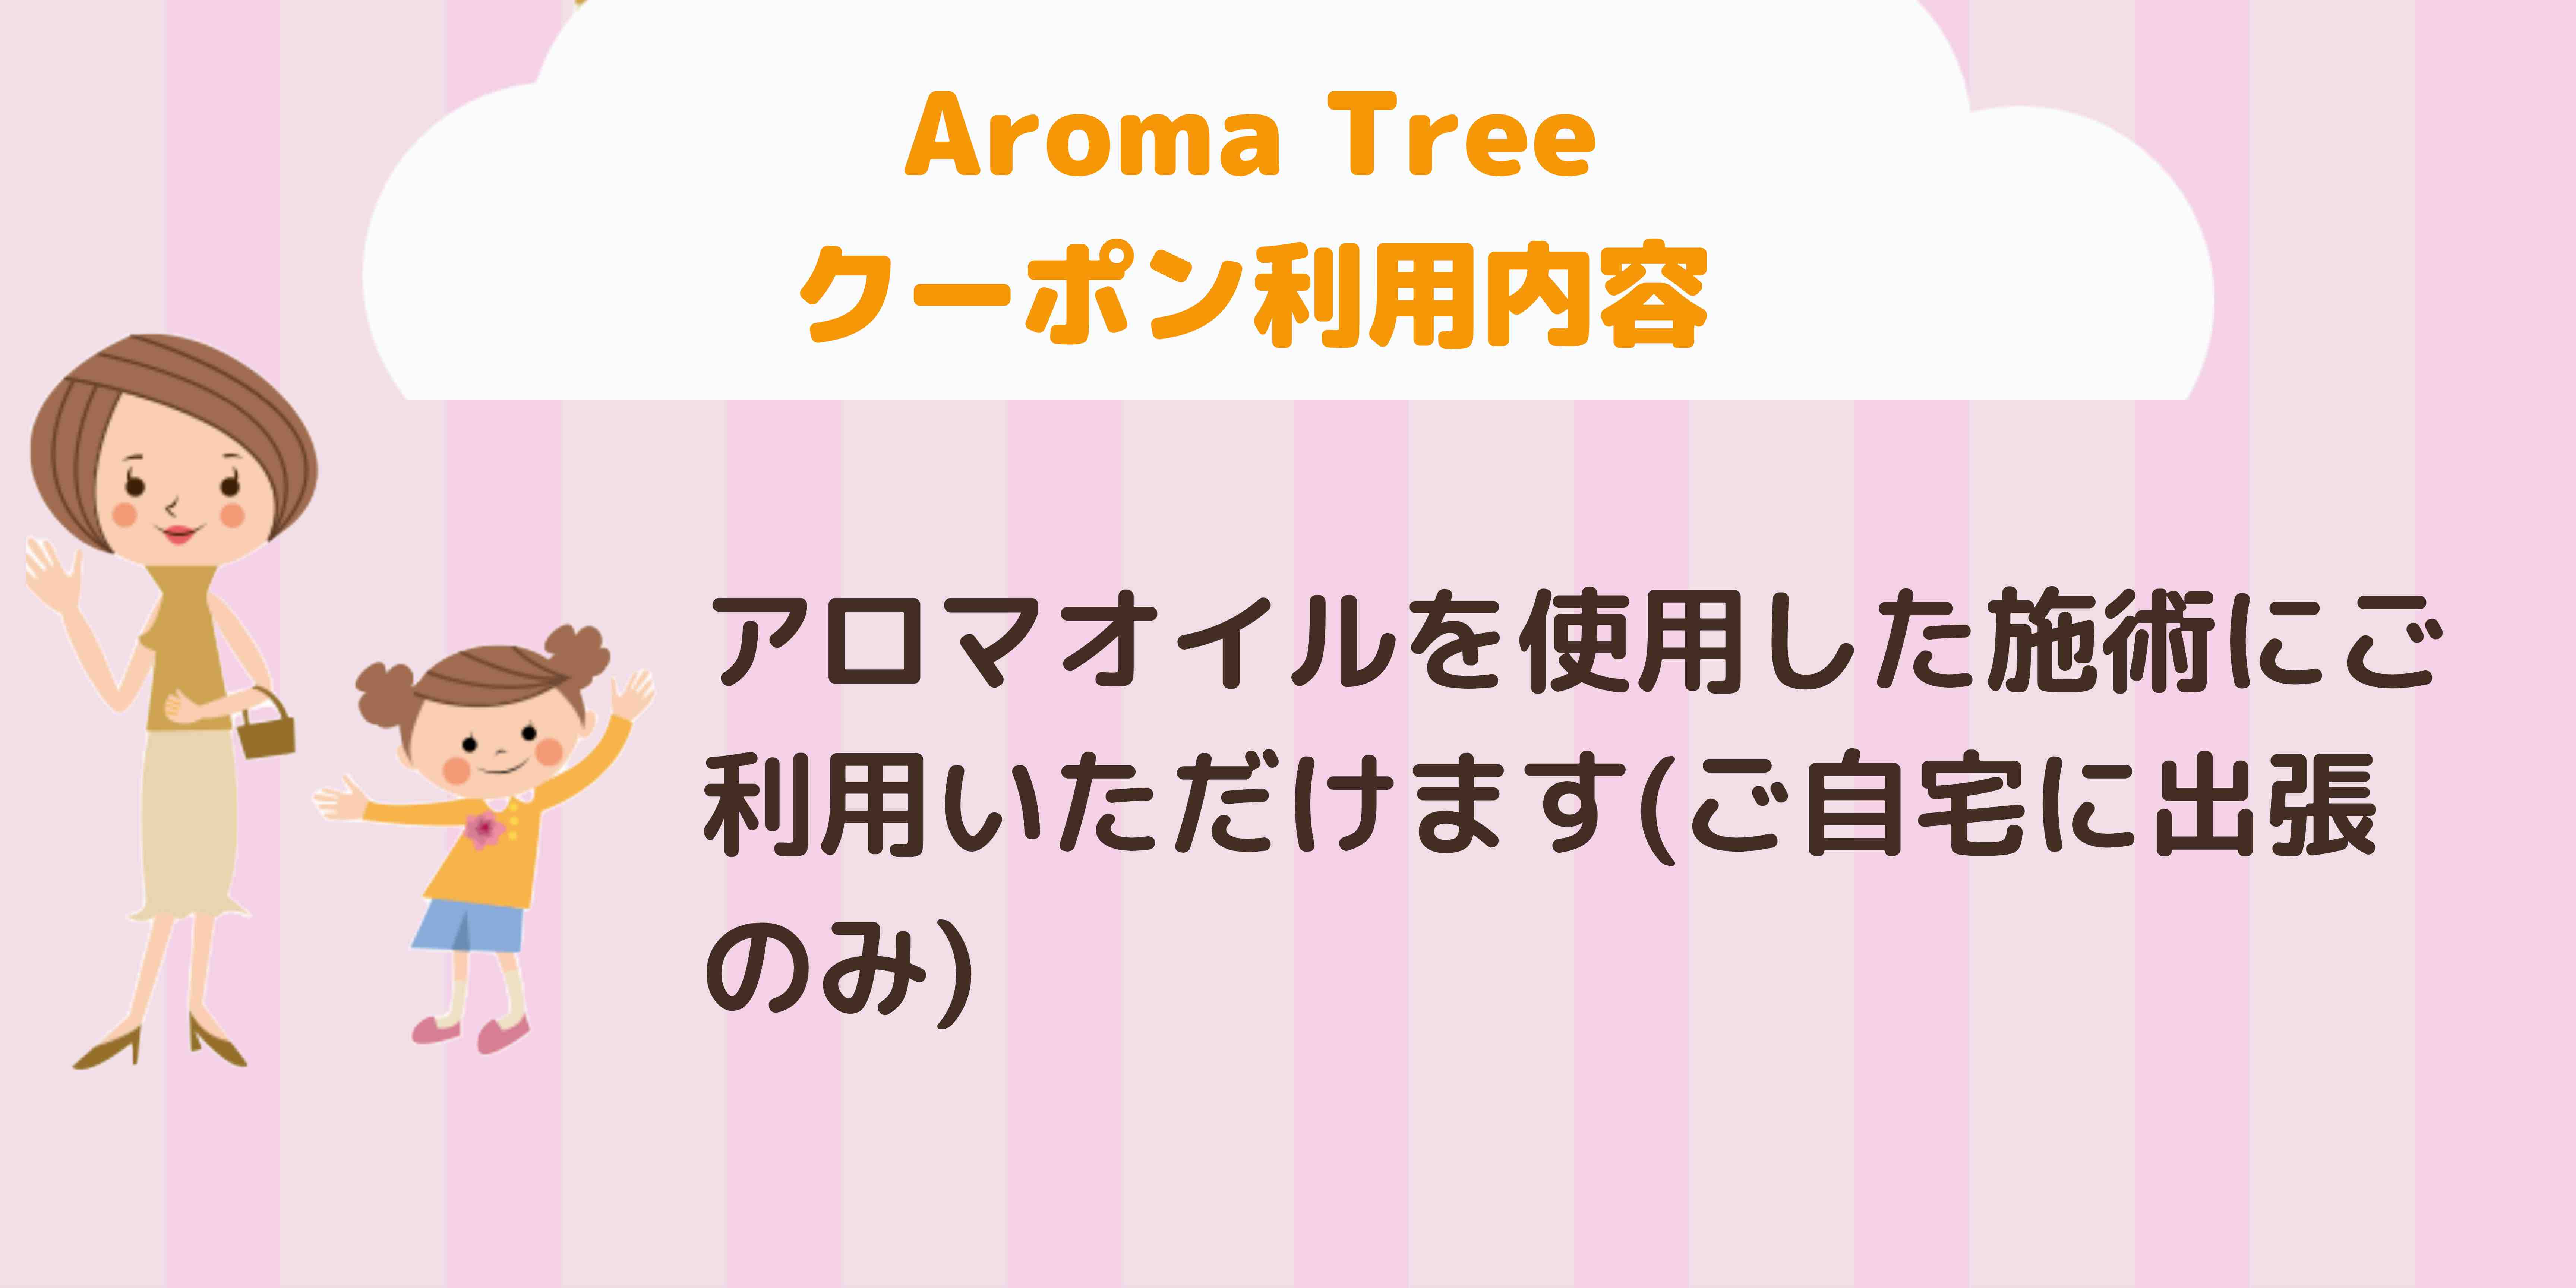 Aroma Tree